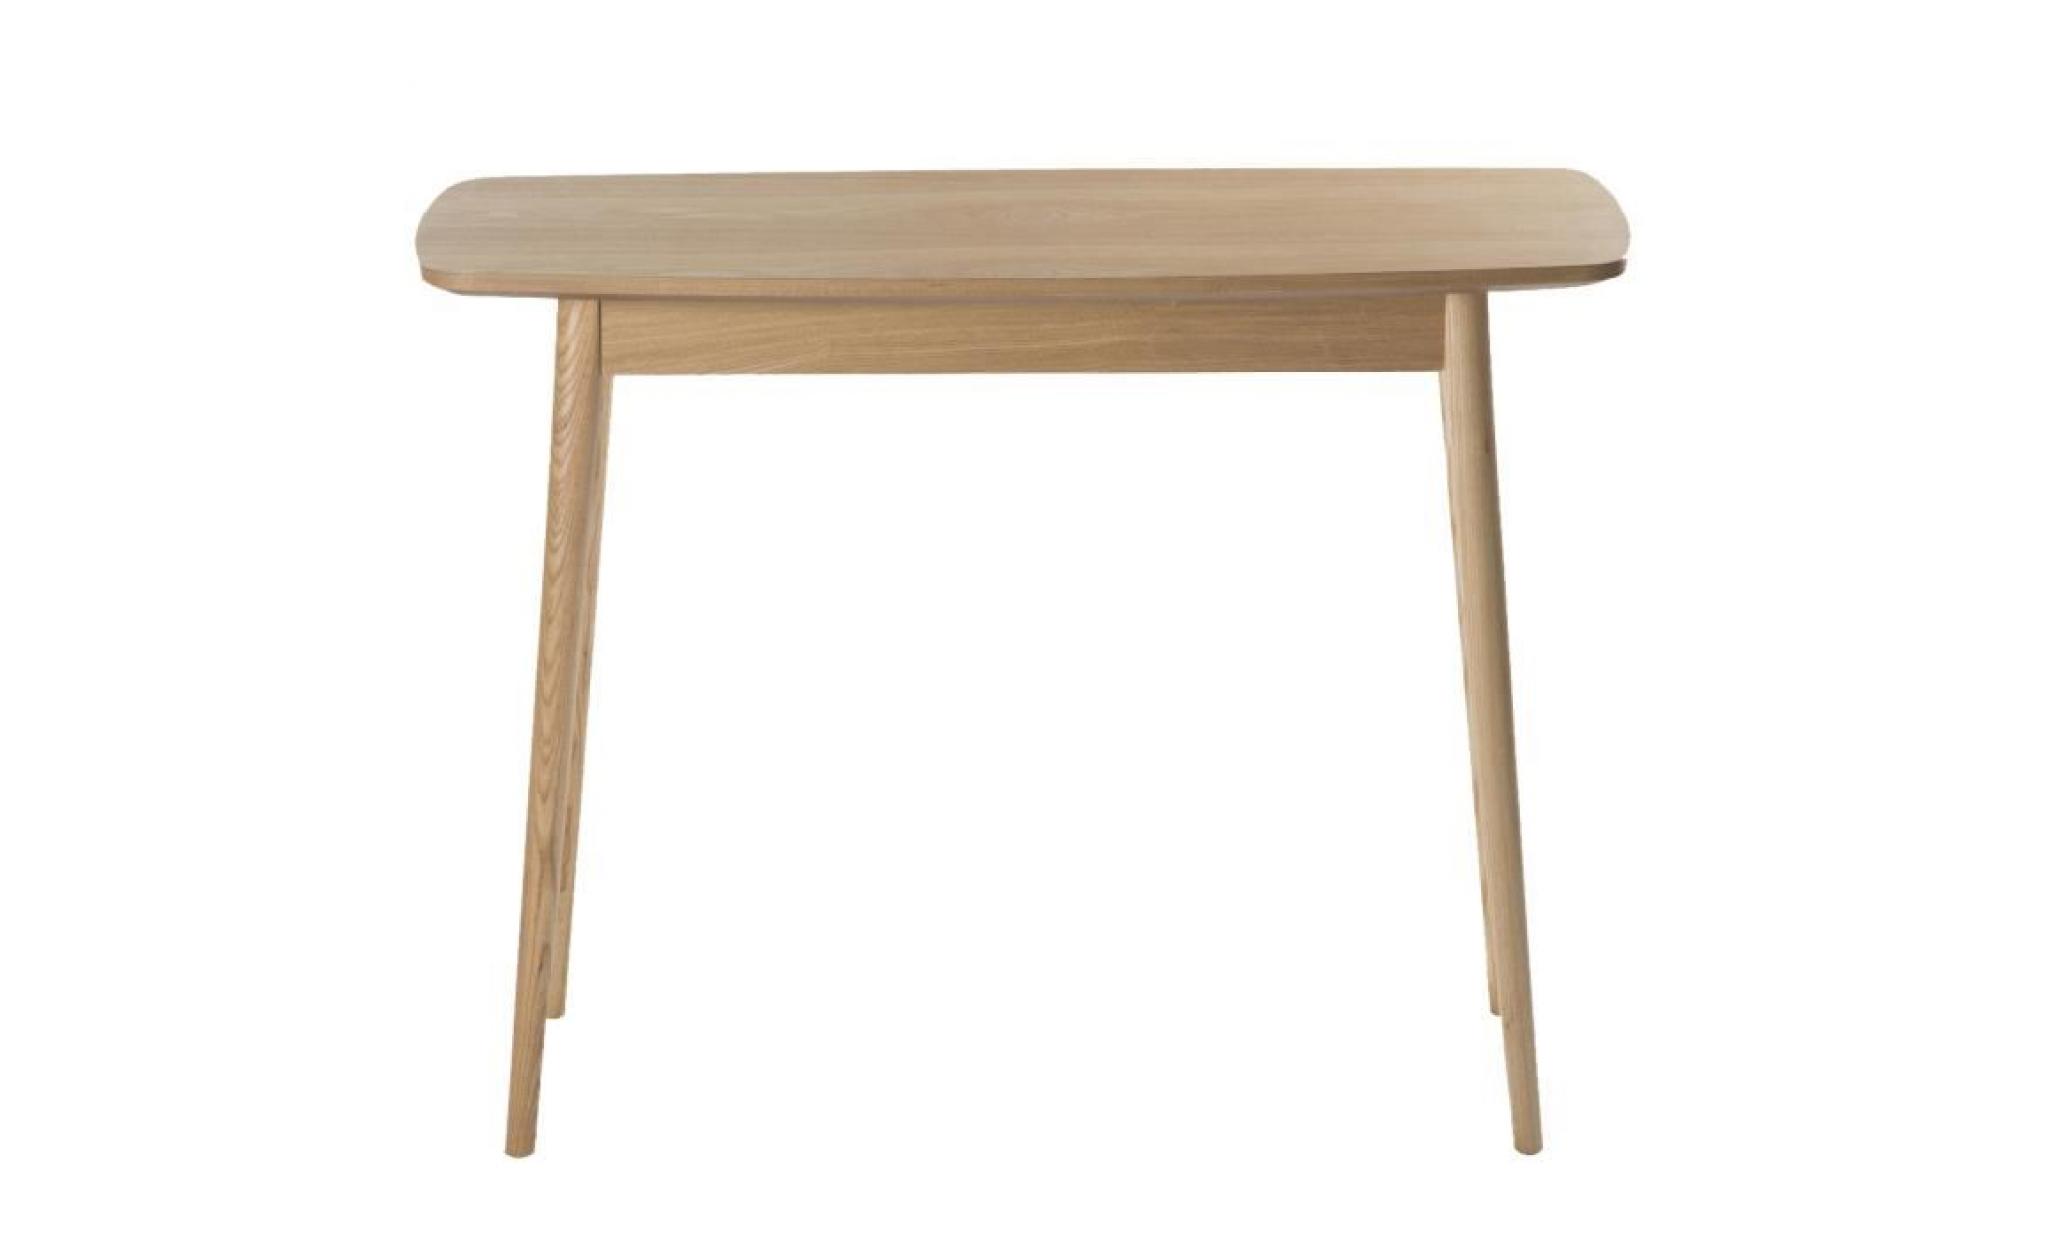 meuble console lerka en bois design scandinave pieds biseautés h 75cm x l 120cm x l 55cm marron pas cher